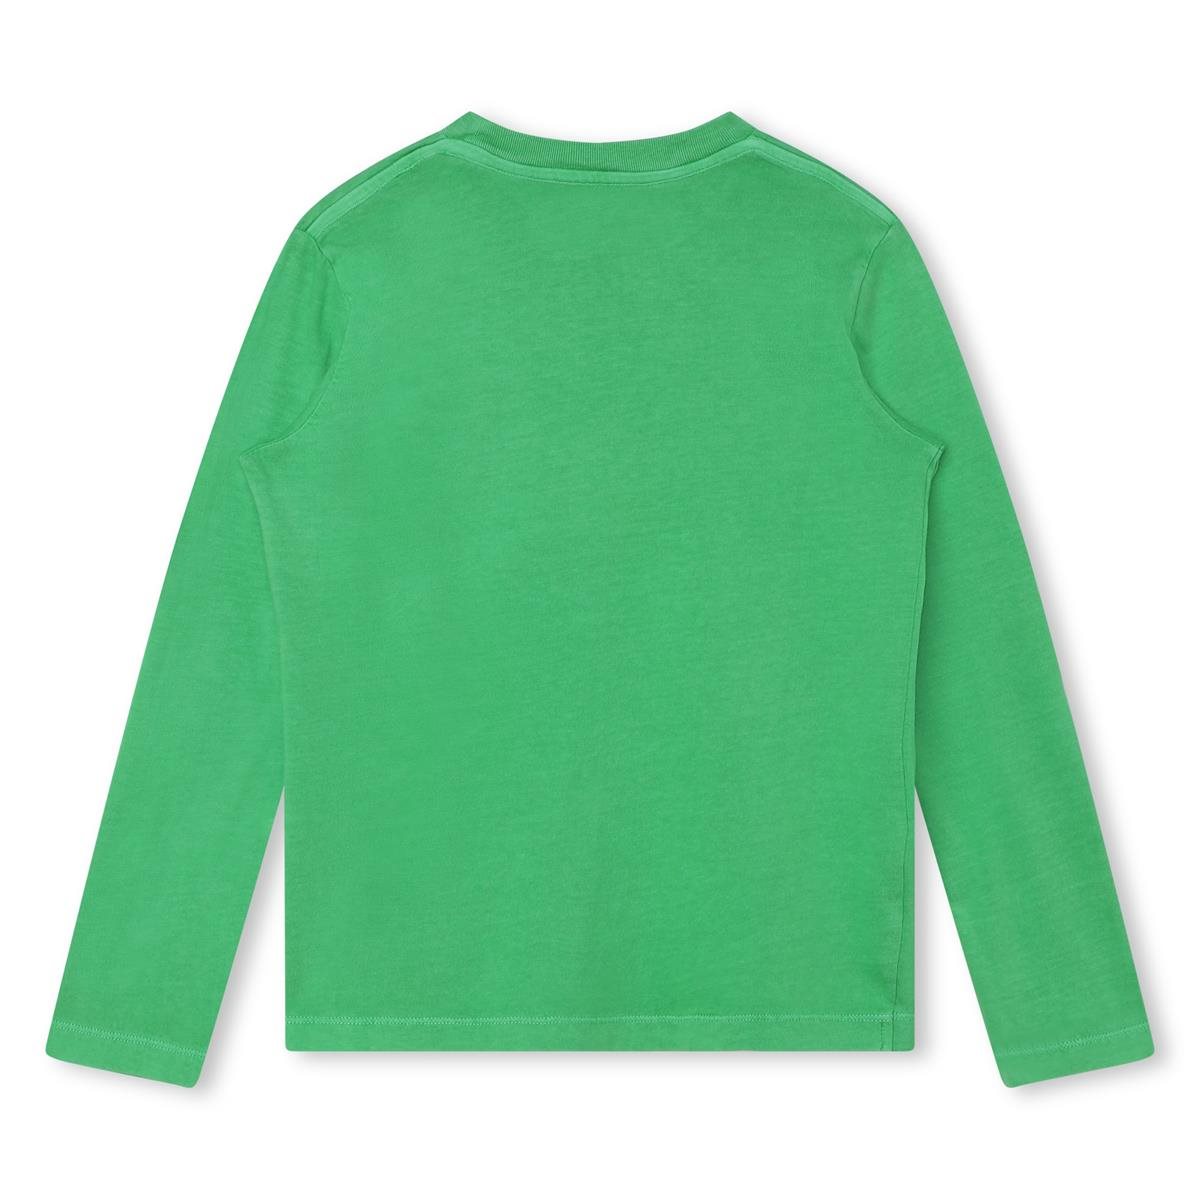 Zadig & Voltaire t-shirt groen